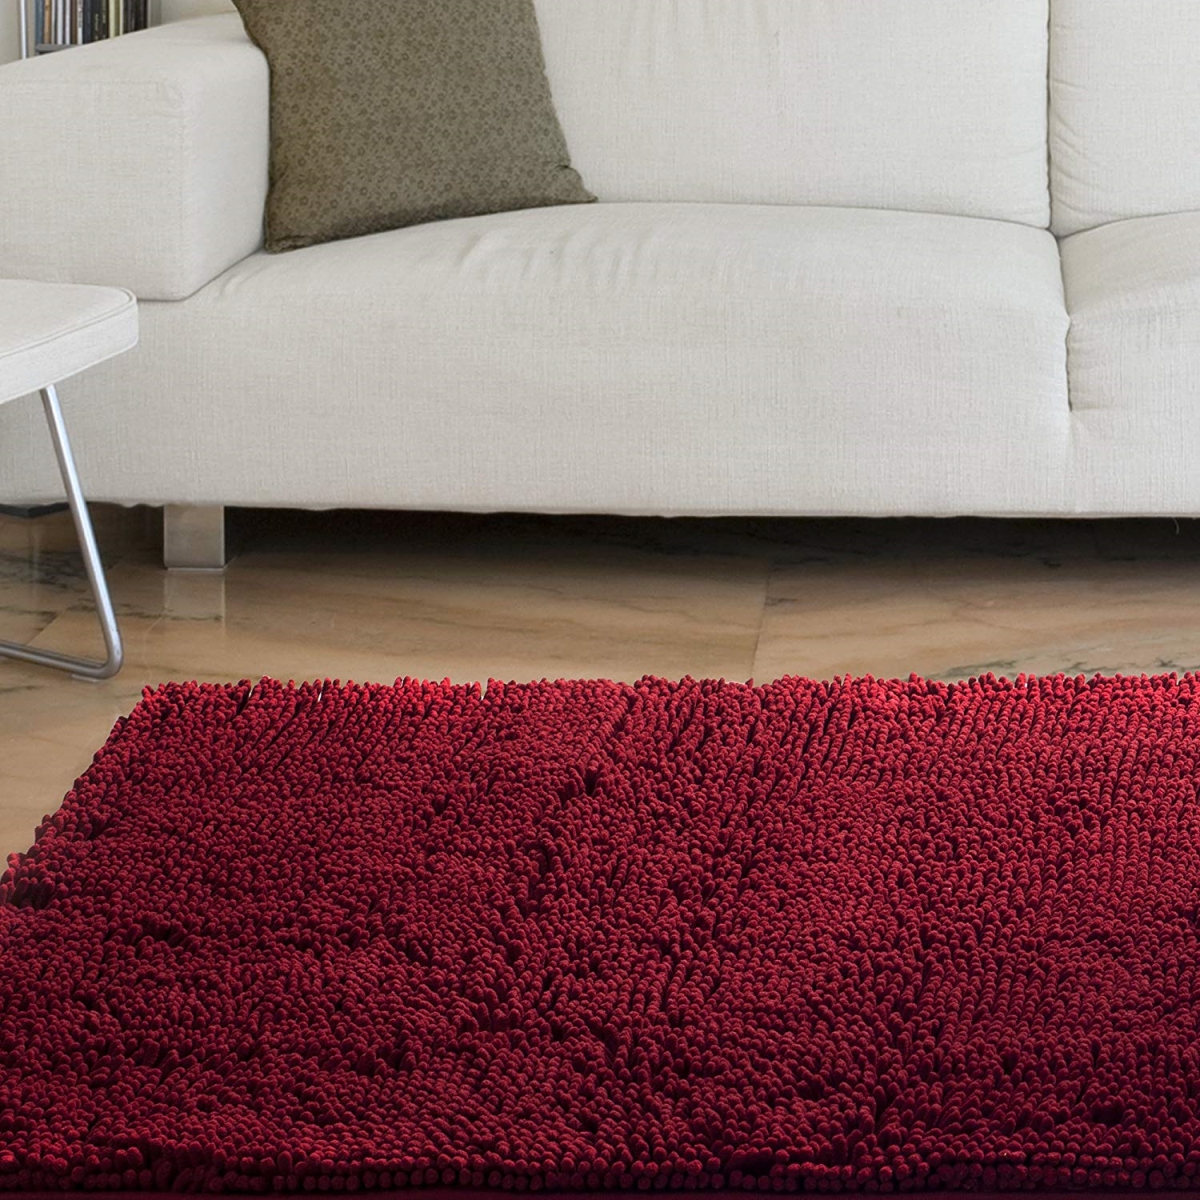 67a-00687 High Pile Shag Rug Carpet, 21 X 36 In. - Burgundy